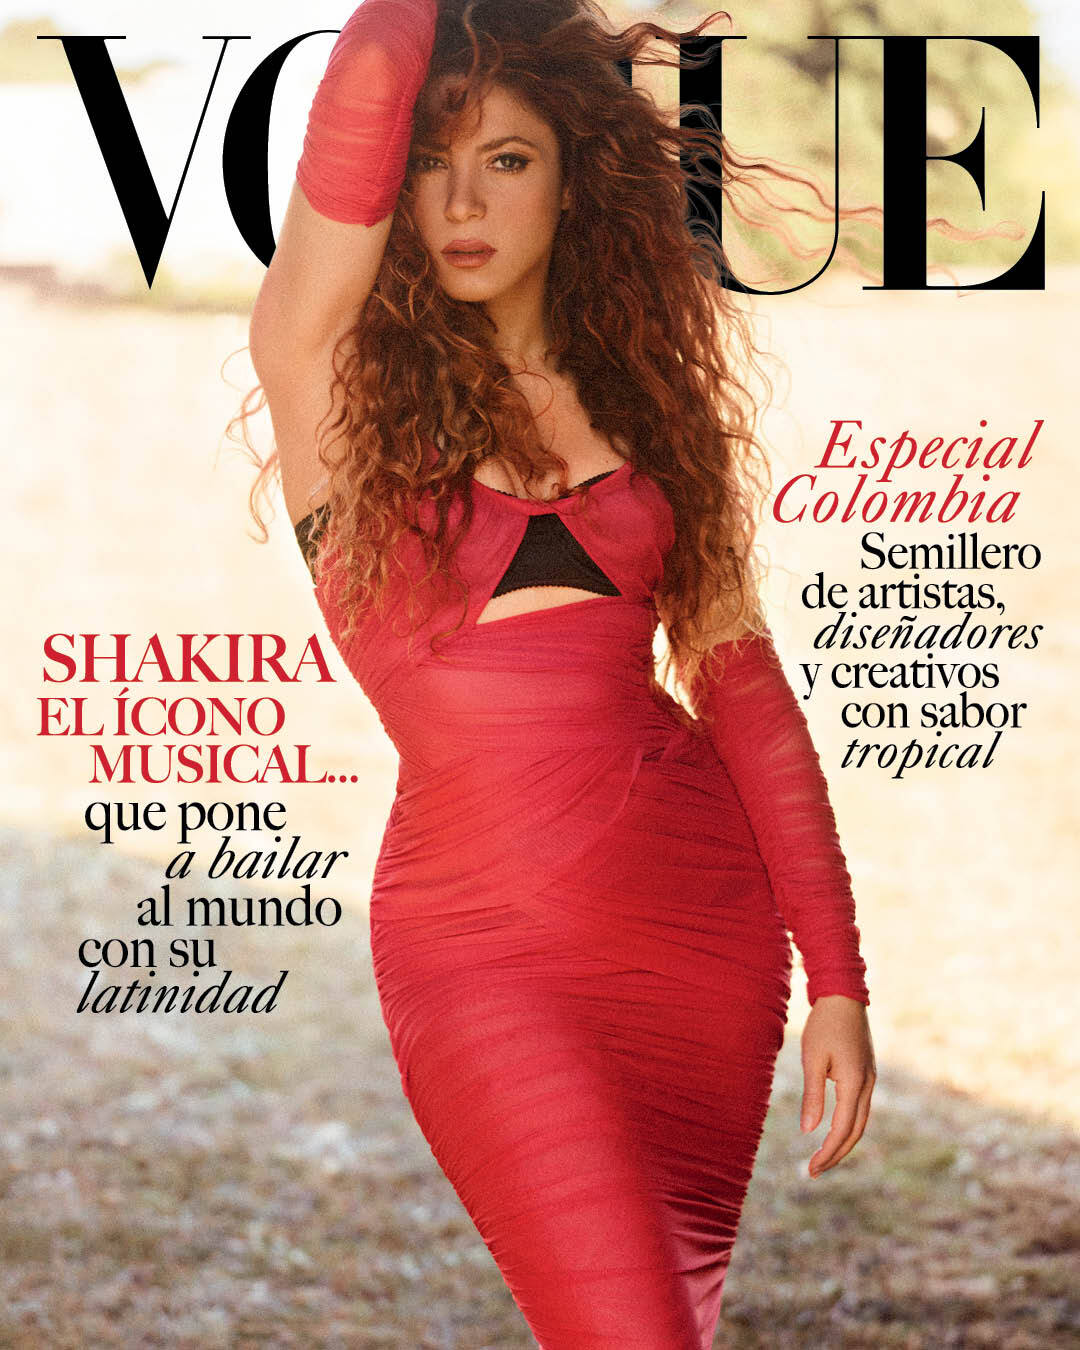 La portada del mes de julio de Vogue trae a la cantante colombiana Shakira.